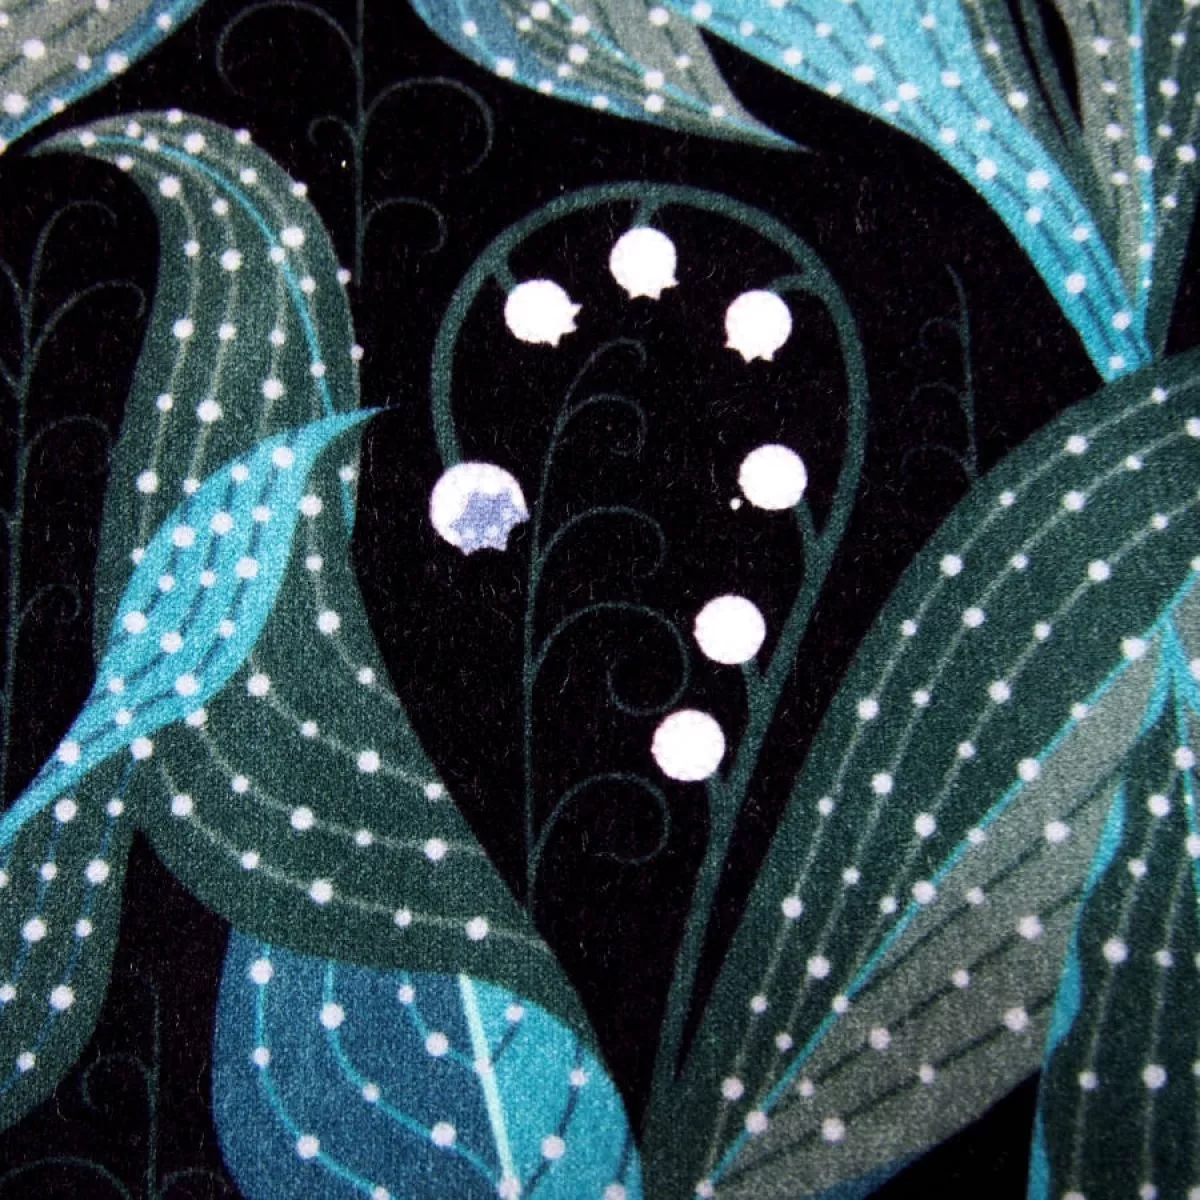 Sofakissen-Bezug "Lily of the Valley" (dunkel) aus Baumwollsamt (50 x 50 cm)